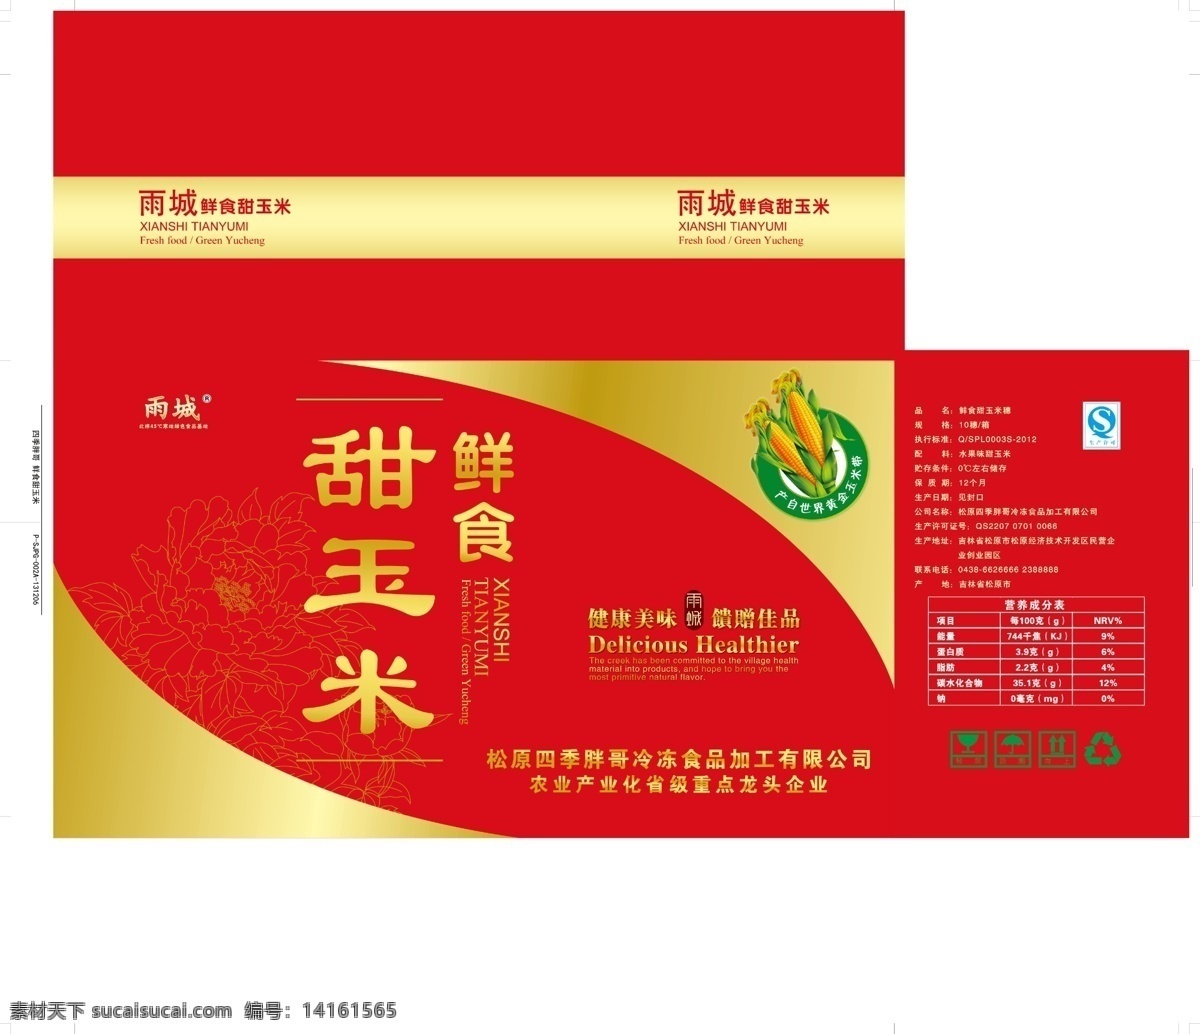 鲜食 甜 玉米 包装 礼盒 红色 喜庆 qs 防潮 向上 轻放 可循环利用 甜玉米标 包装设计 广告设计模板 源文件